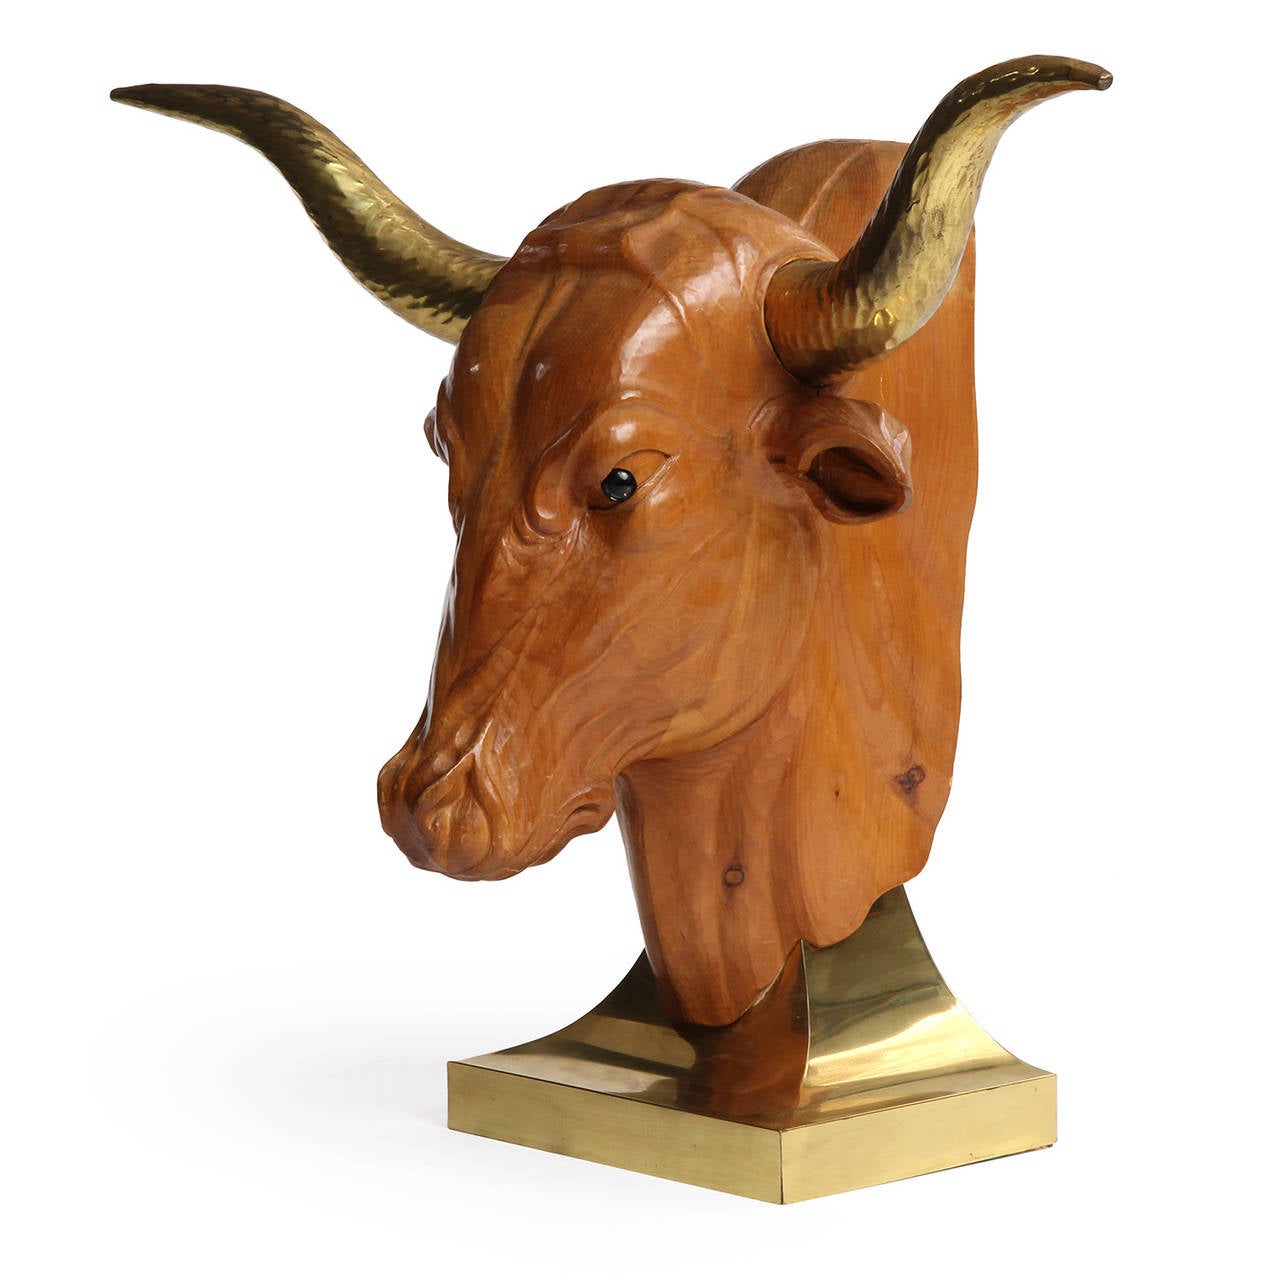 Sculpture en bois sculptée, détaillée, grandeur nature, représentant une tête de taureau avec des cornes en laiton insérées, montée sur une base inclinée en laiton laqué. Fabriqué aux États-Unis, vers les années 1960.